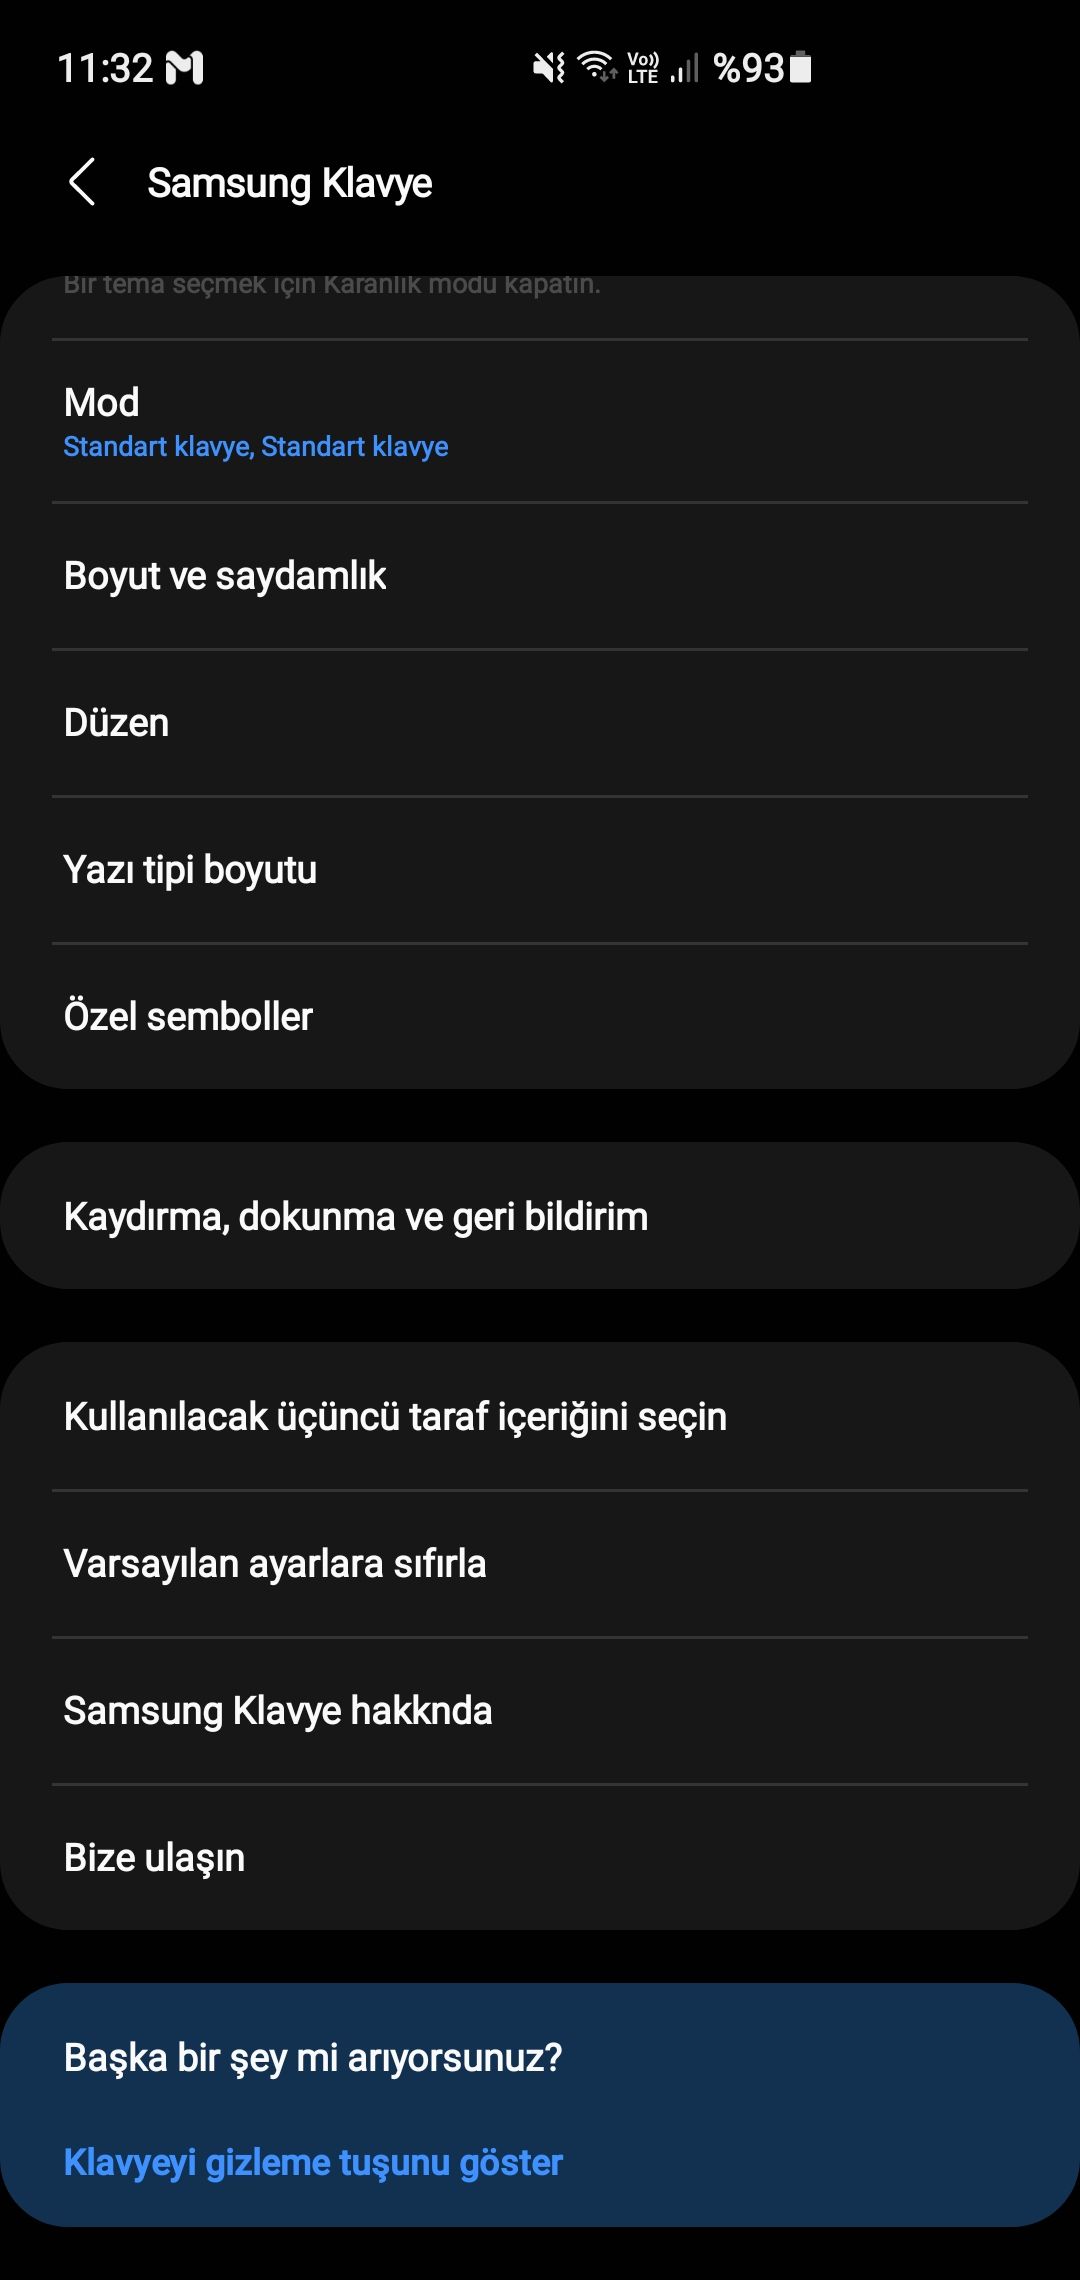 Fiziksel Klavyede Türkçe Karakter Sorunu - Page 2 - Samsung Members